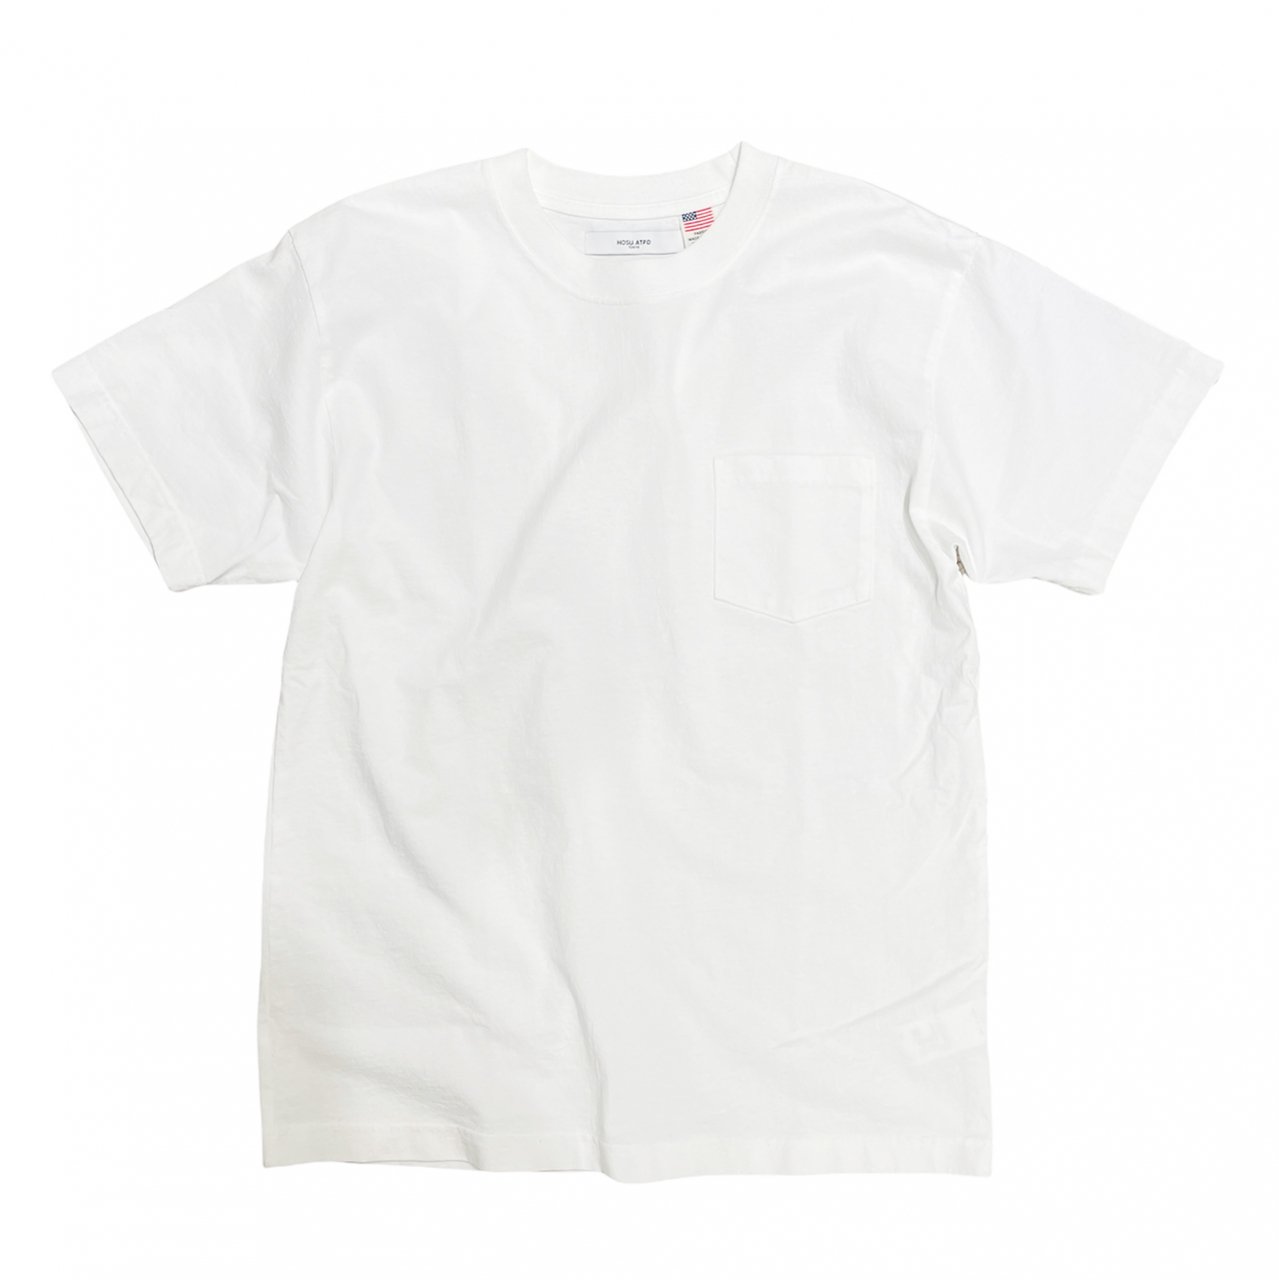 HOSU USAコットンポケットTシャツ (ホワイト)